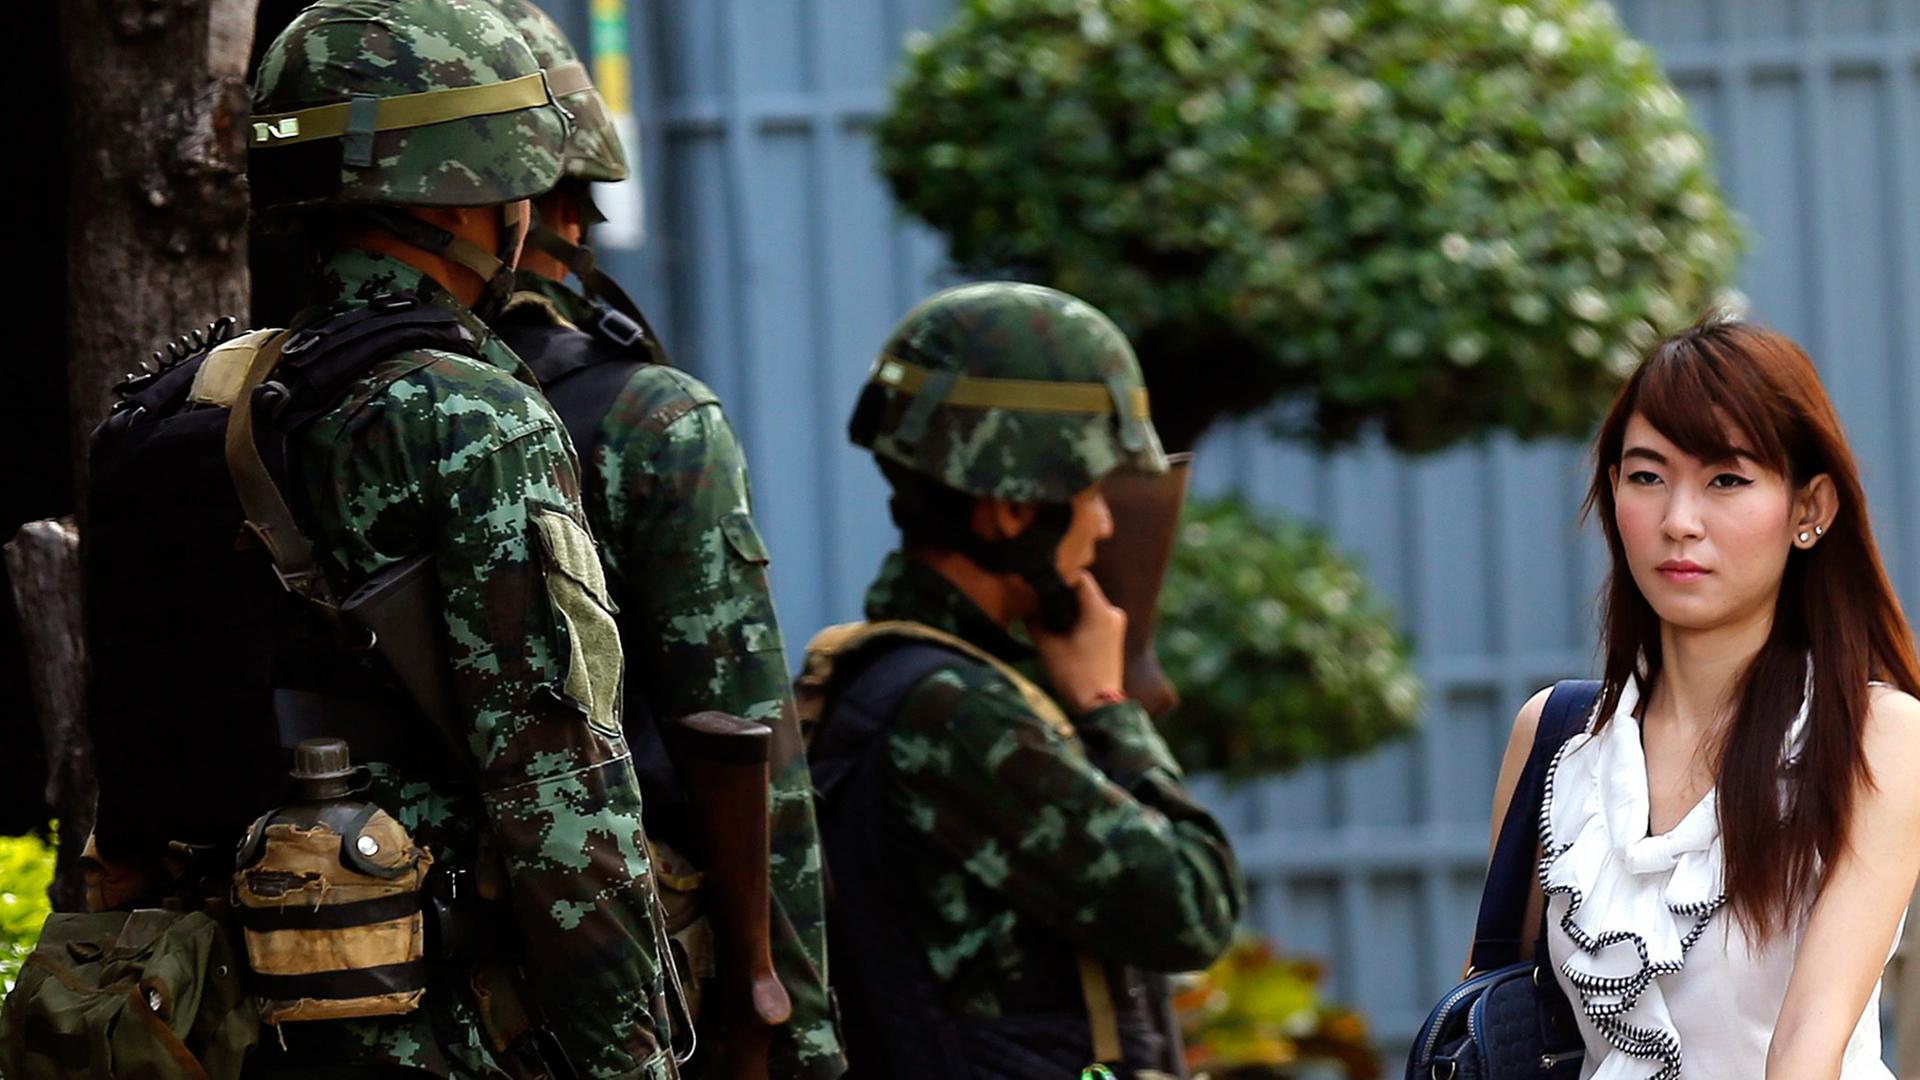 Straßenszene in Bangkok nach der Verhängung des kriegsrechts am Dienstag, eine Frau passiert mehrere Soldaten.